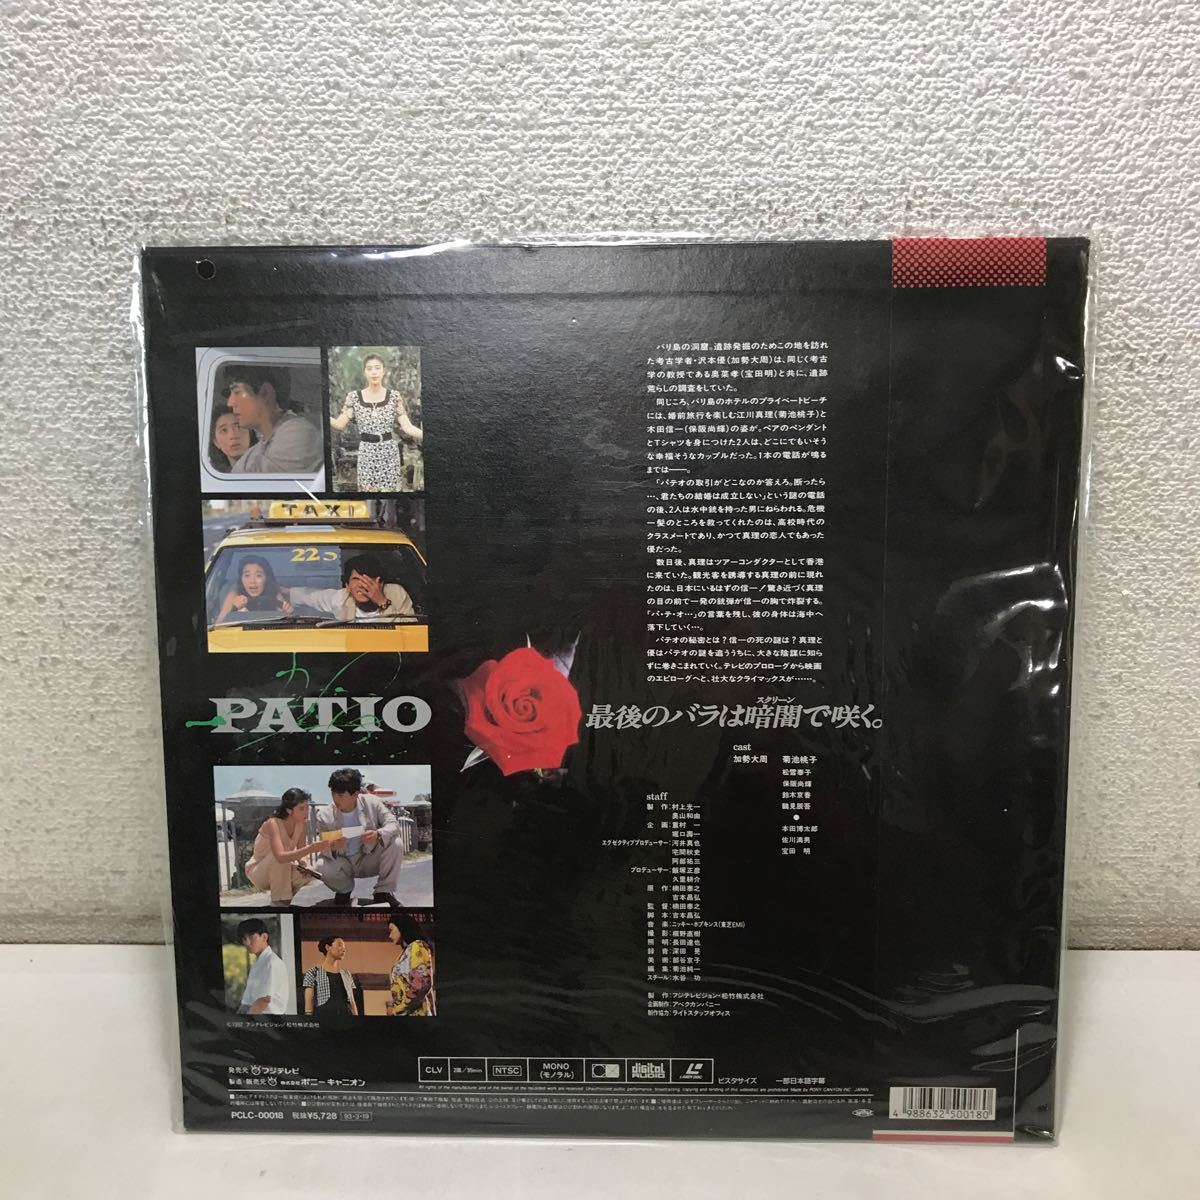 220701^CB16^LD шпаклевка oPATIO театр версия 1993 год произведение с поясом оби прекрасный запись лазерный диск 